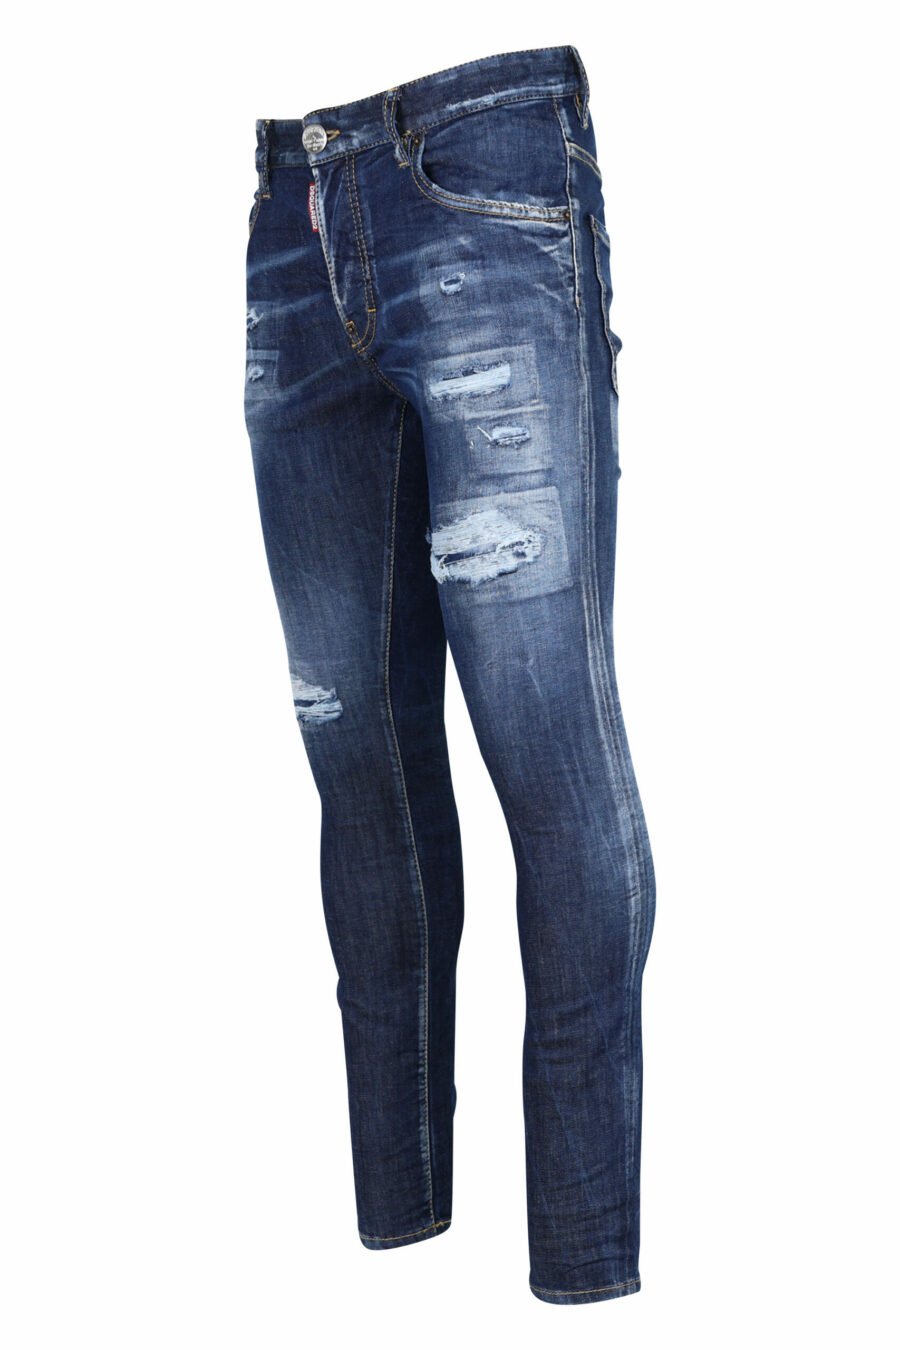 Pantalón vaquero "super twinky jean" azul con rotos y desgastado - 8054148106201 1 scaled